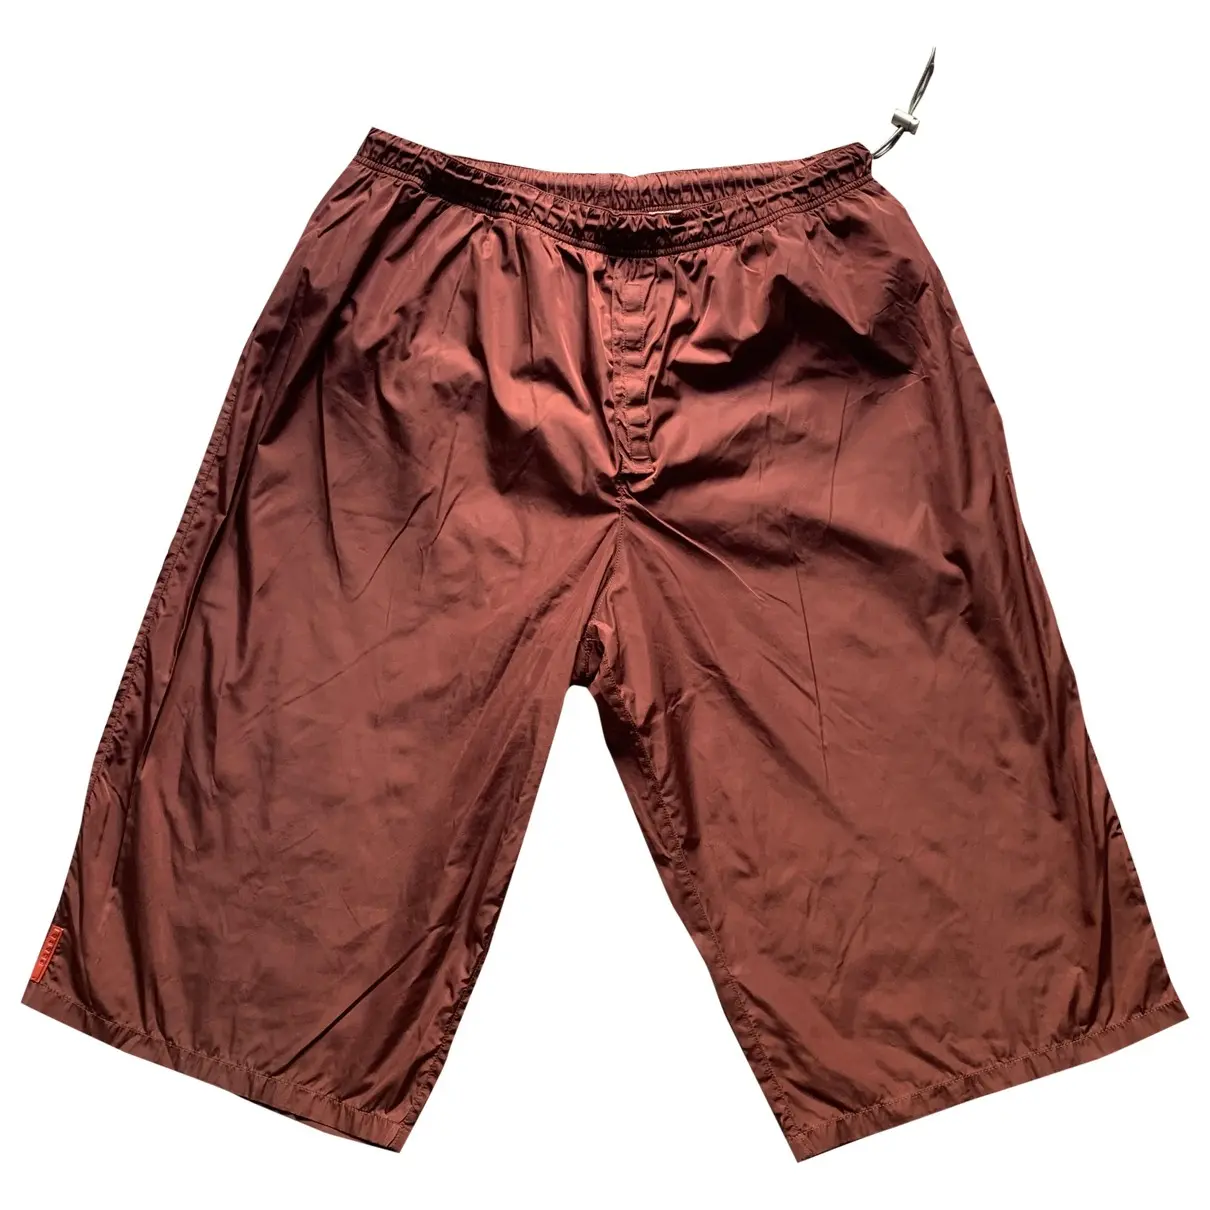 Burgundy Synthetic Shorts Prada - Vintage